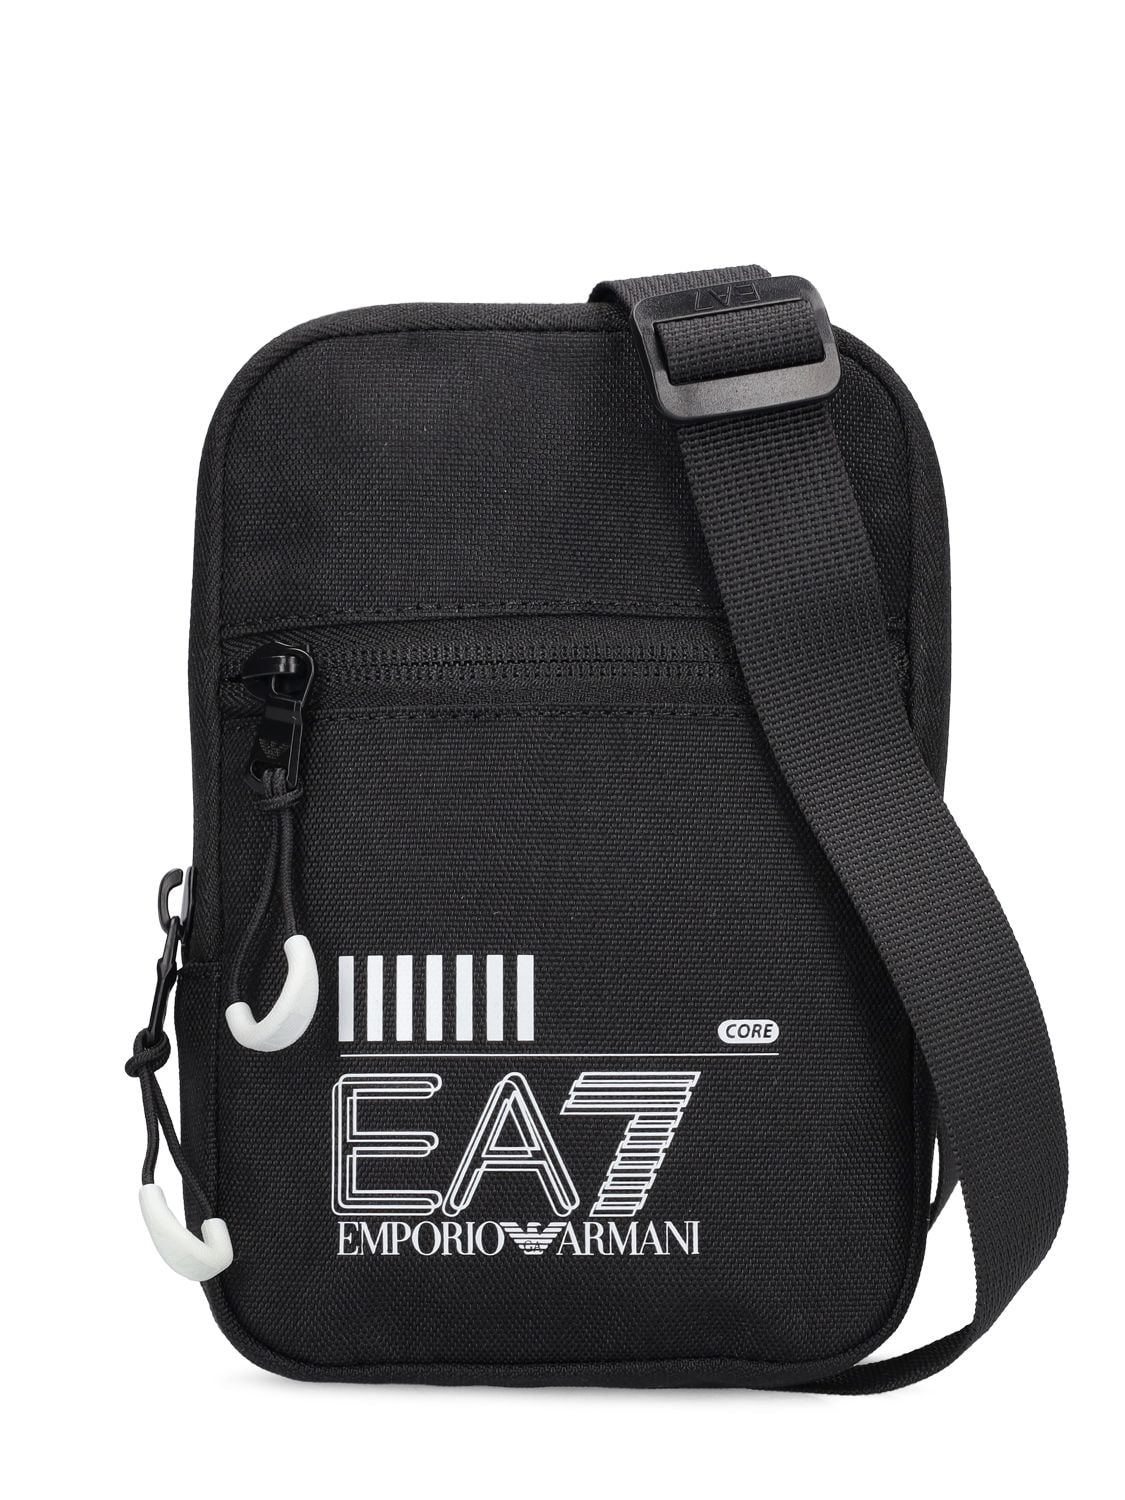 Core Identity Crossbody Bag - EA7 EMPORIO ARMANI - Modalova